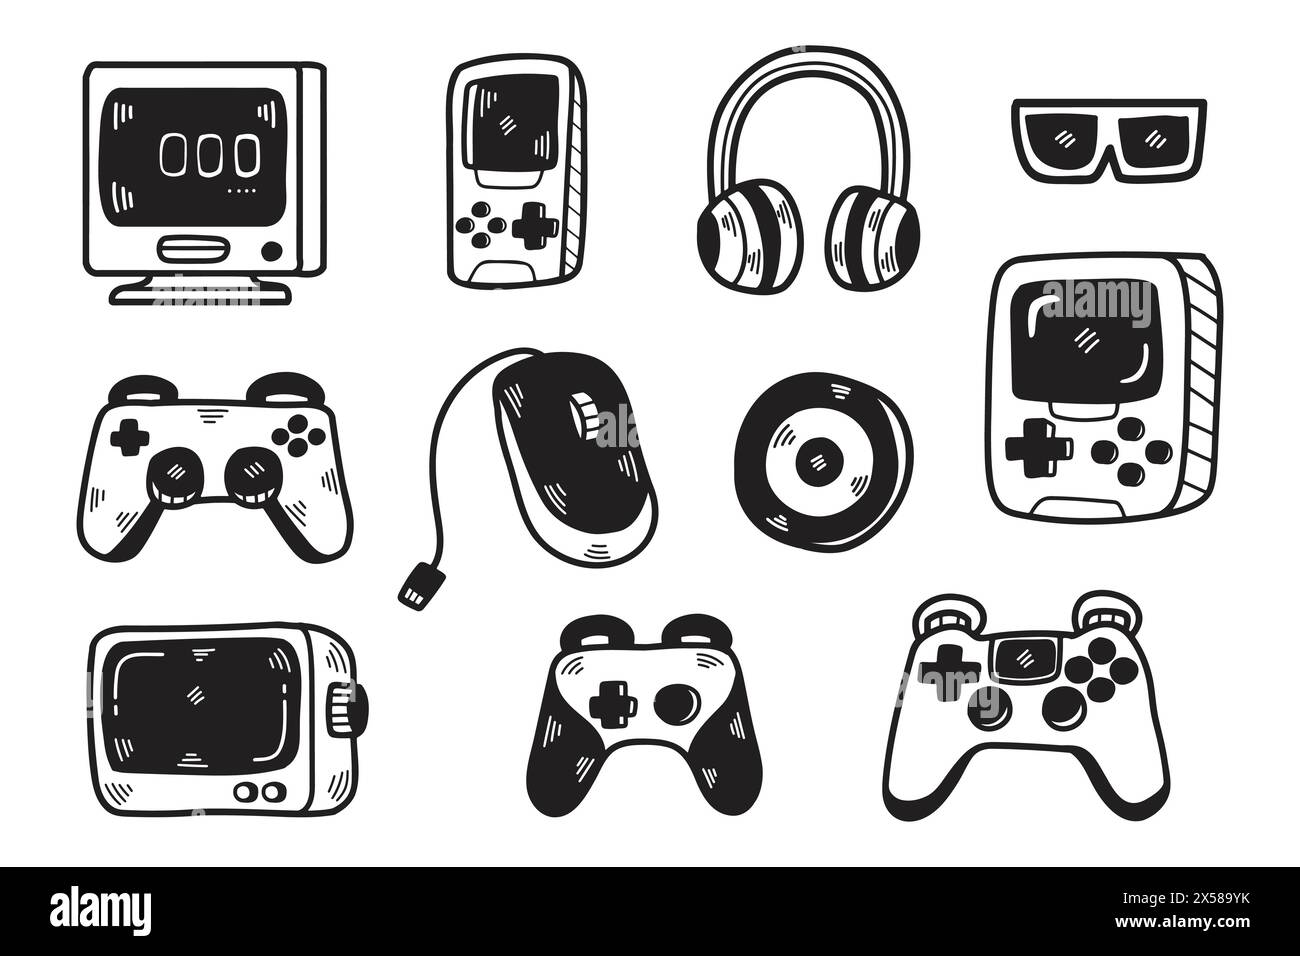 Una raccolta di controller e accessori per videogiochi. I controller includono un telecomando Wii, un controller Nintendo GameCube e un Nintendo Wii Nunch Illustrazione Vettoriale